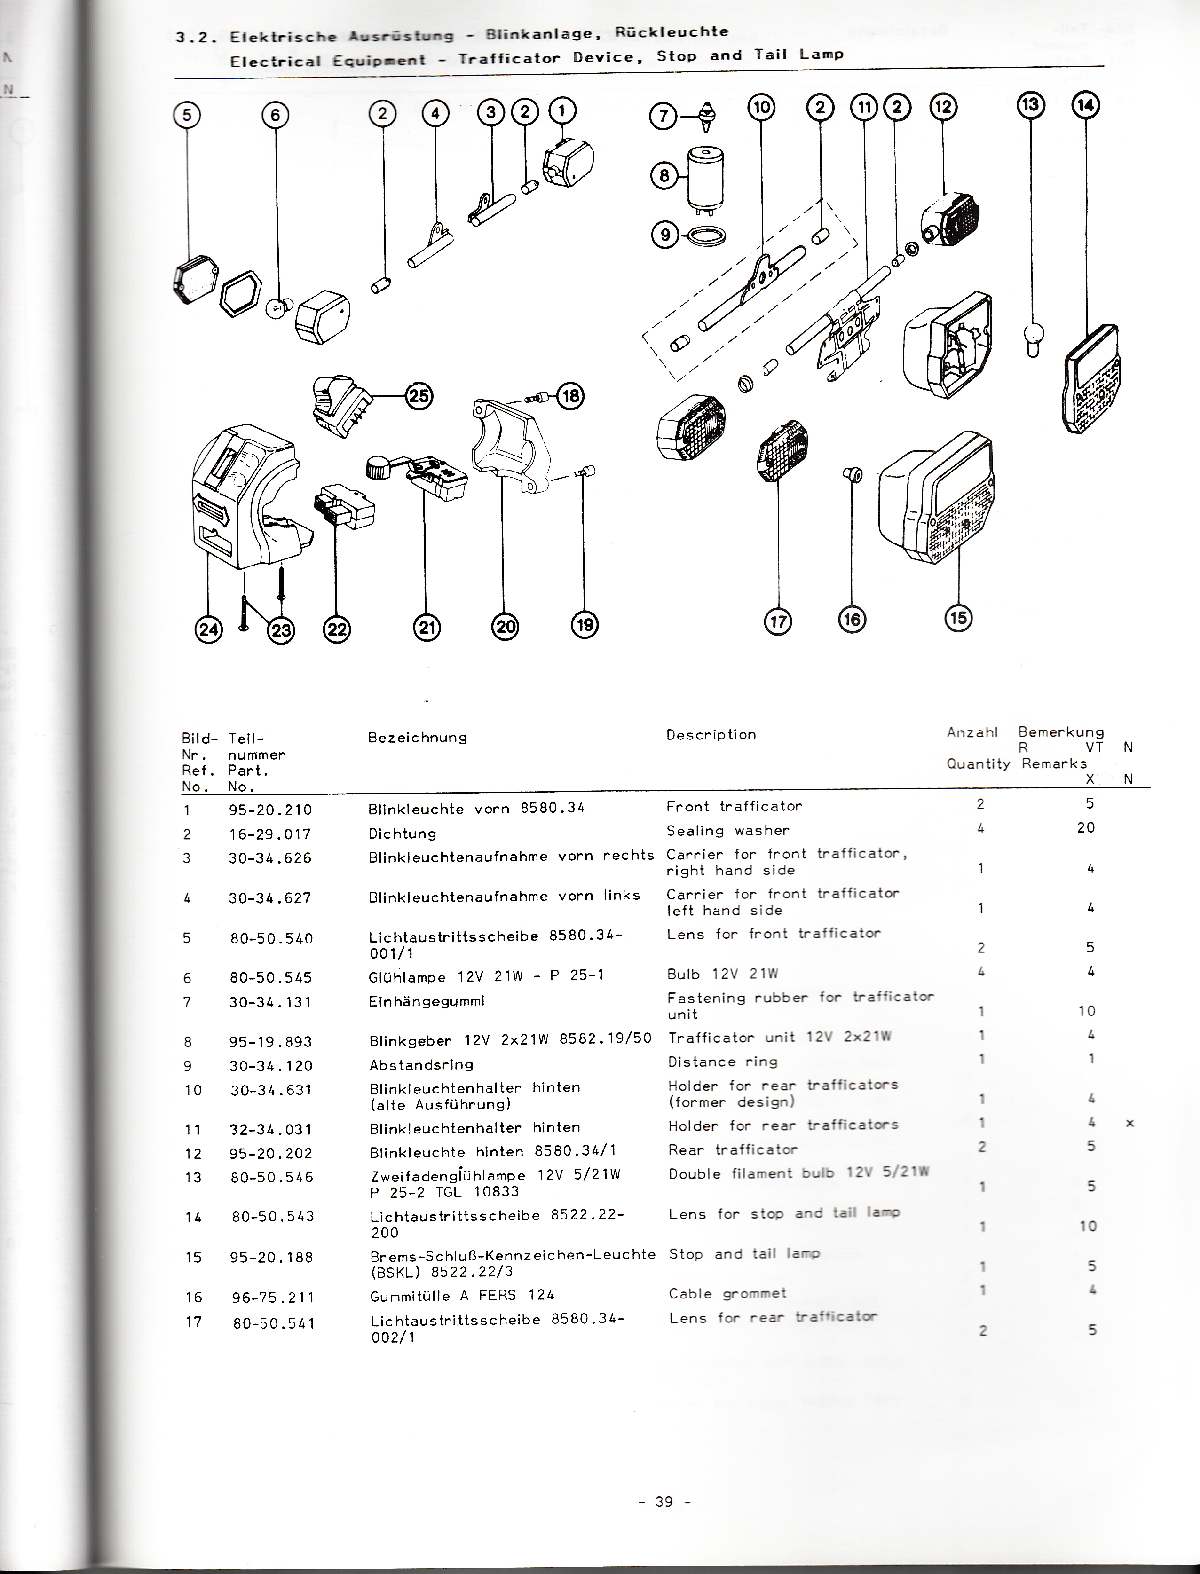 Katalog MZ 251 ETZ - 3.2. Elektrische Ausrüstung - Blinkanlage, Rückleuchte